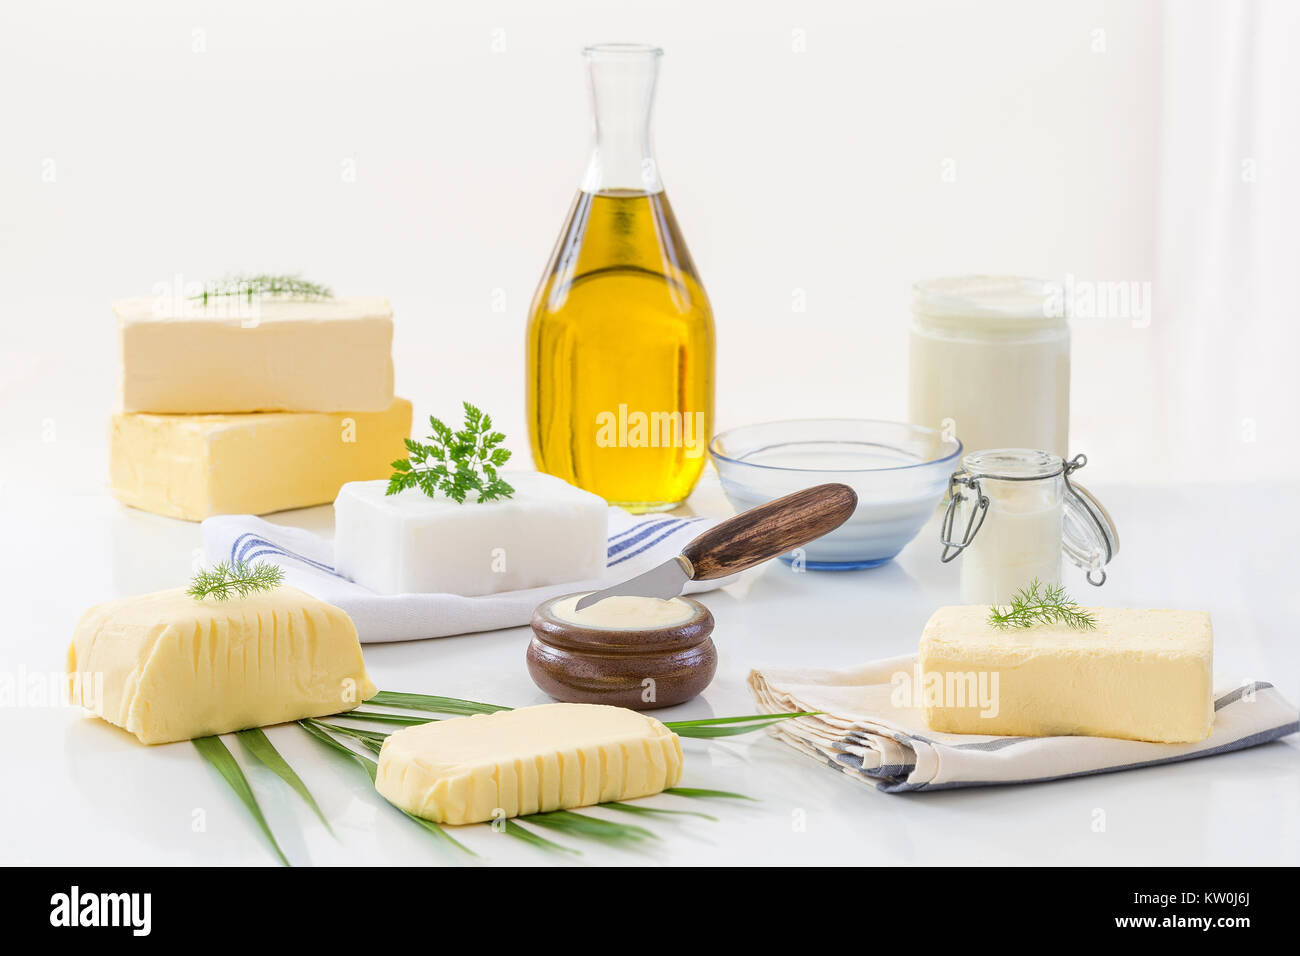 Grassi alimentari e olio : insieme di prodotti lattiero-caseari e olio e grassi animali su sfondo bianco Foto Stock